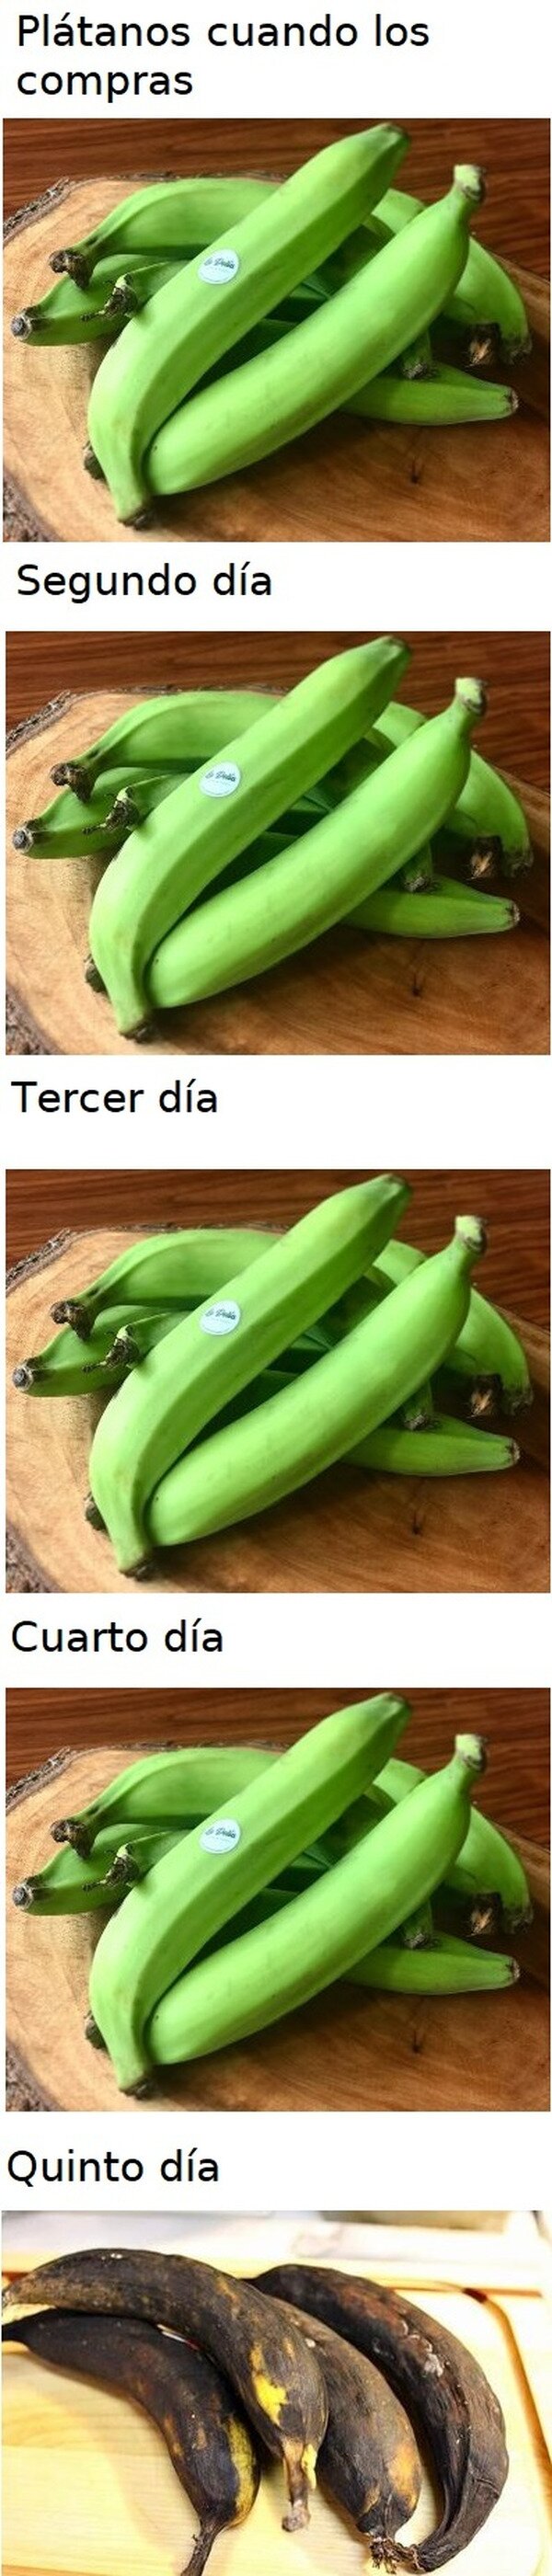 Meme_otros - Los plátanos maduran a su manera